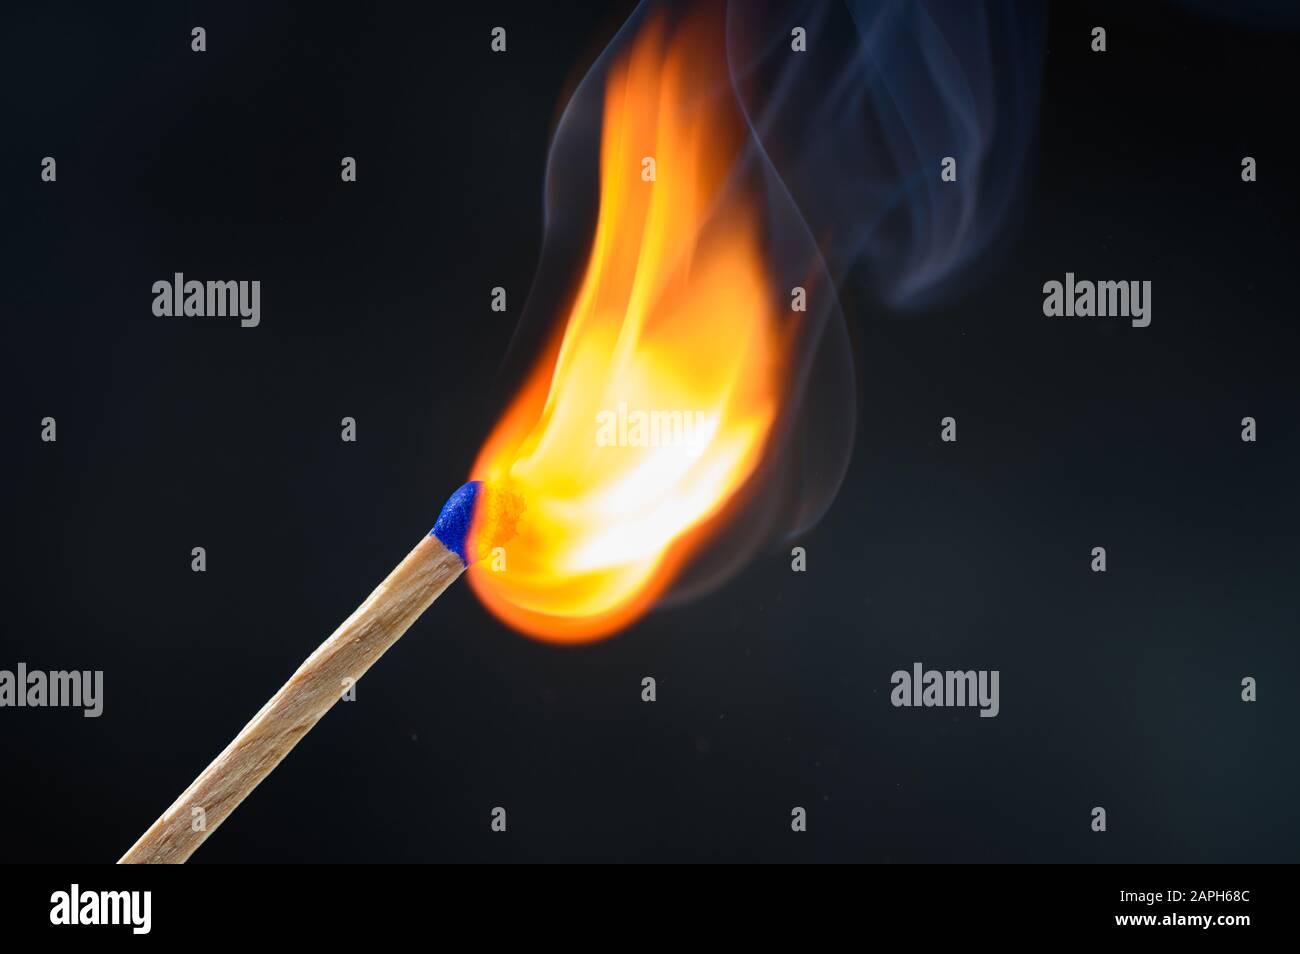 Holz-Streichholz mit blauem Kopf entzündet und brennendes helles Großfeuer  auf schwarzem Grund Stockfotografie - Alamy